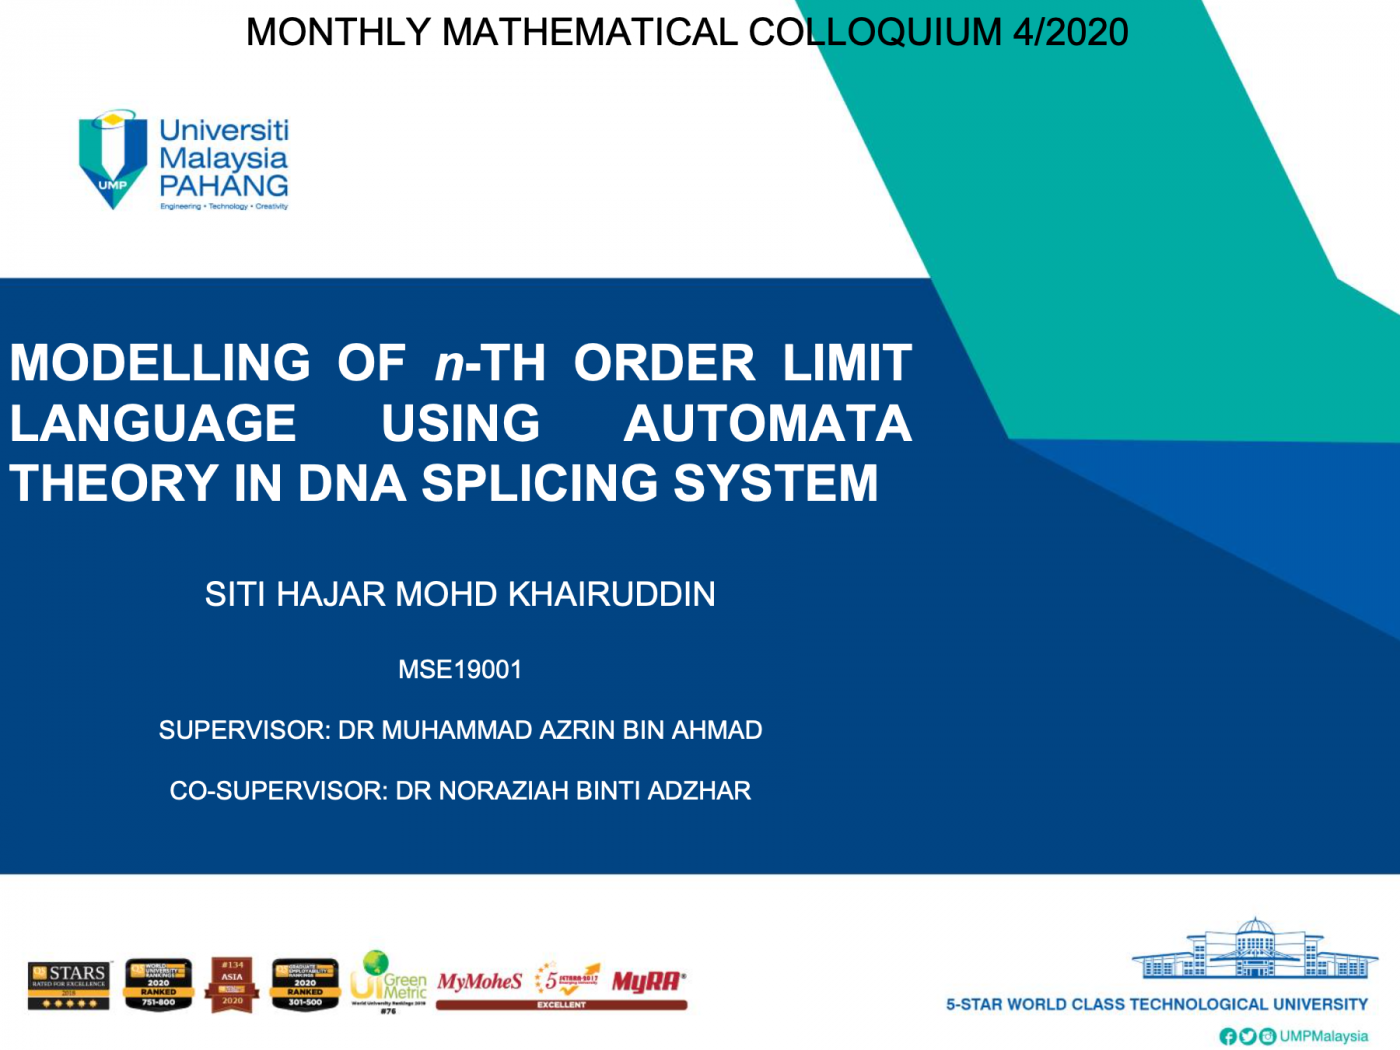 Monthly Mathematical Colloquium (MMC) 4, 2020